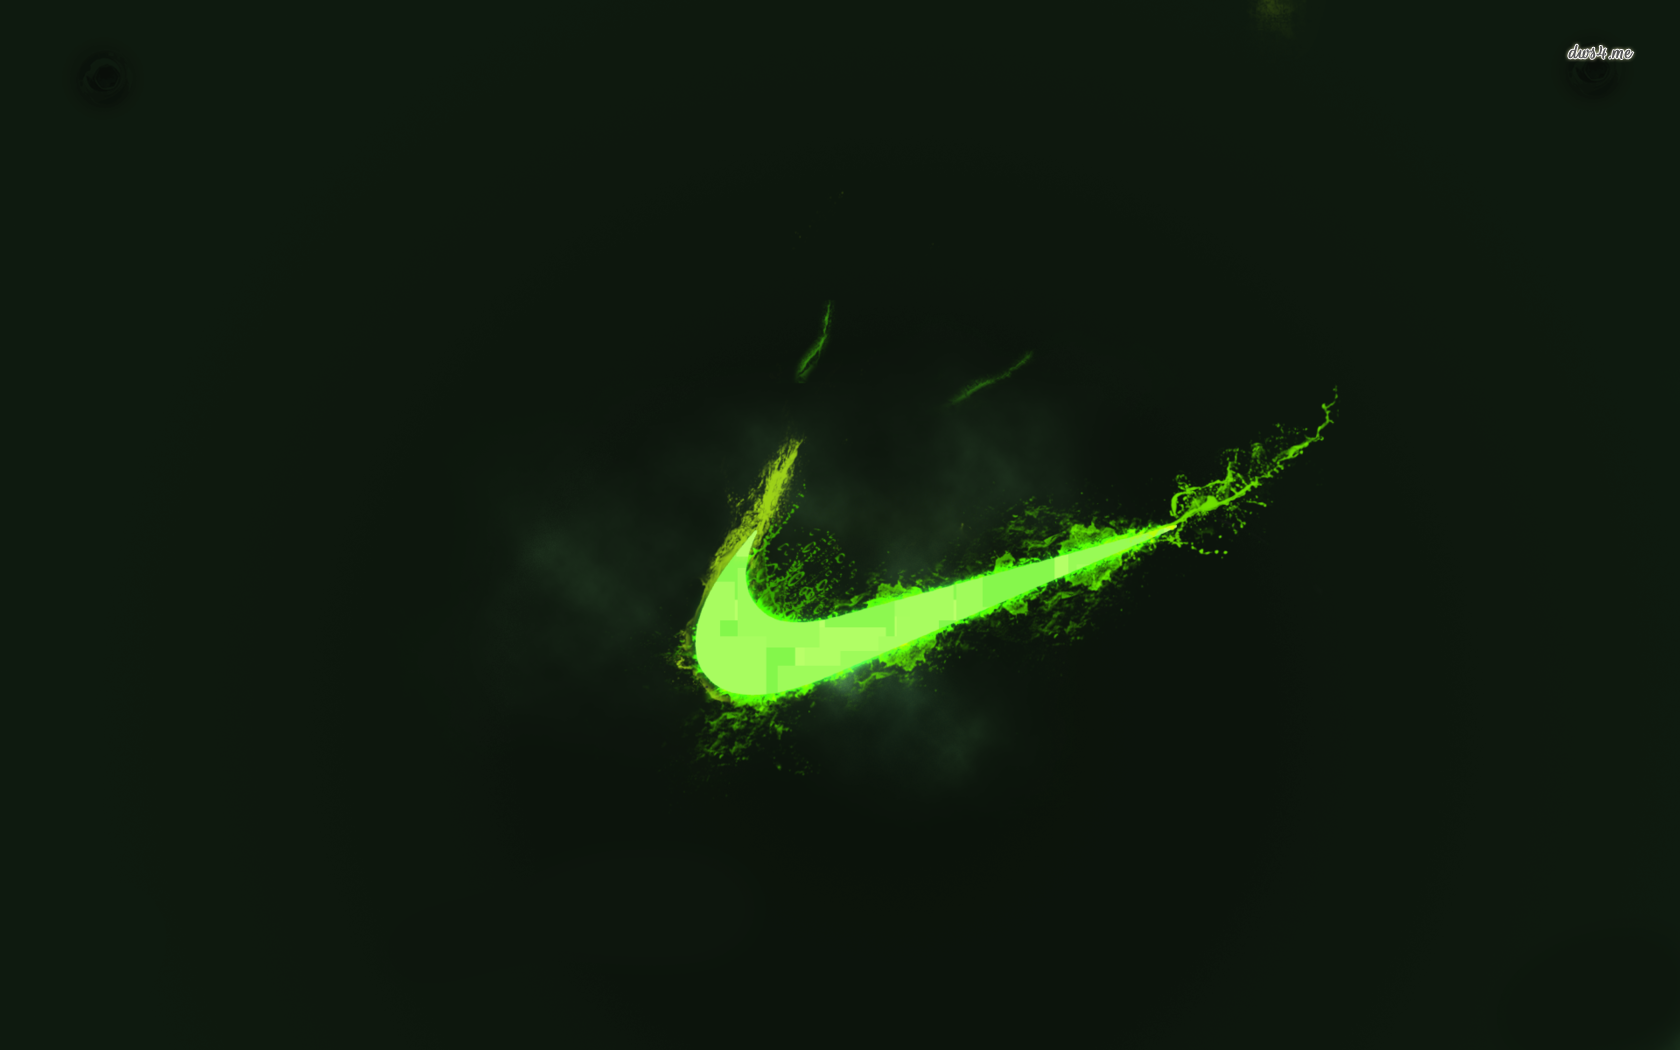 Lấy cảm hứng từ sự phát sáng của đèn neon, Nike green logo được lột xác trong hình ảnh mới với nền đen và màu xanh lấp lánh. Hãy ngắm nhìn mẫu logo hầm hố này trên nền đen trắng để tận hưởng sự đẳng cấp và chuyên nghiệp.